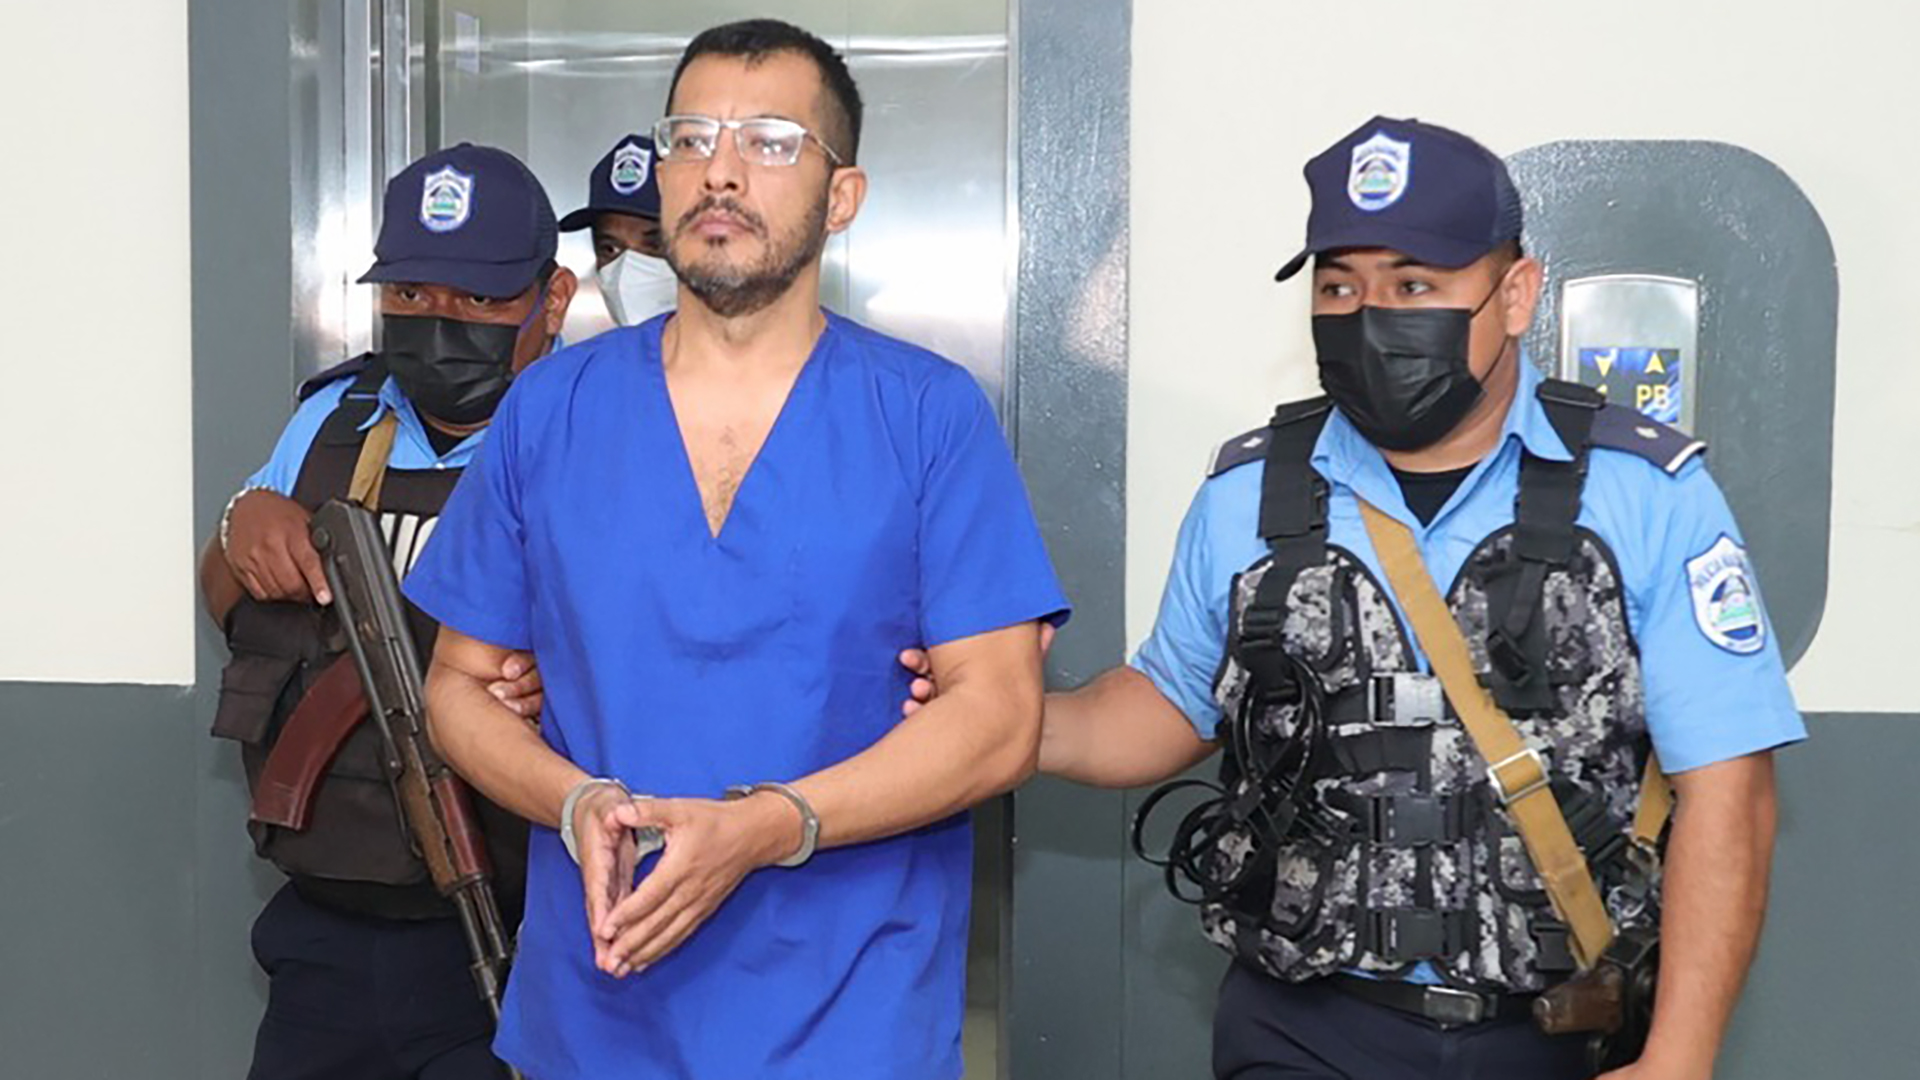 El régimen de Daniel Ortega mostró por primera vez la imágen de un preso político con un gran deterioro físico tras 289 días de cárcel